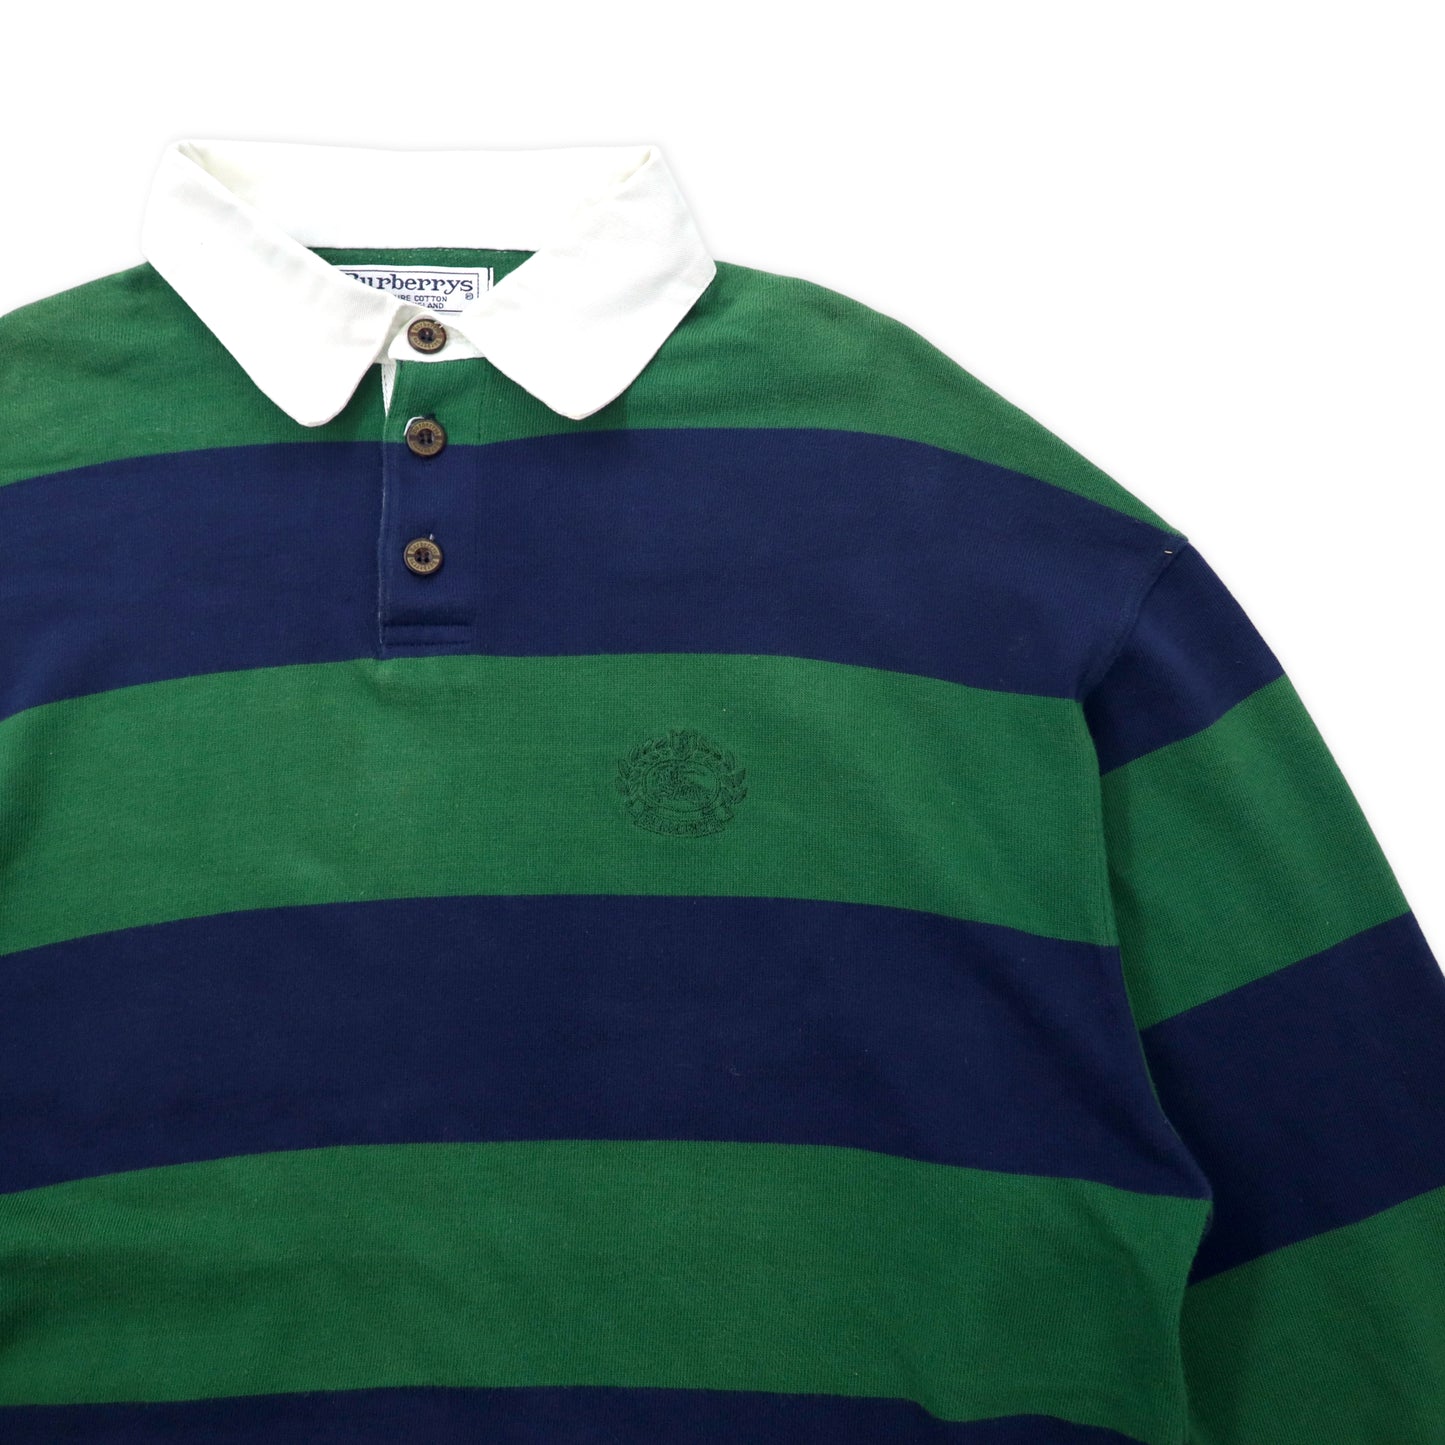 スコットランド製 Burberrys ボーダー ラガーシャツ XL グリーン ネイビー コットン ロゴ刺繍 ビッグサイズ オールド